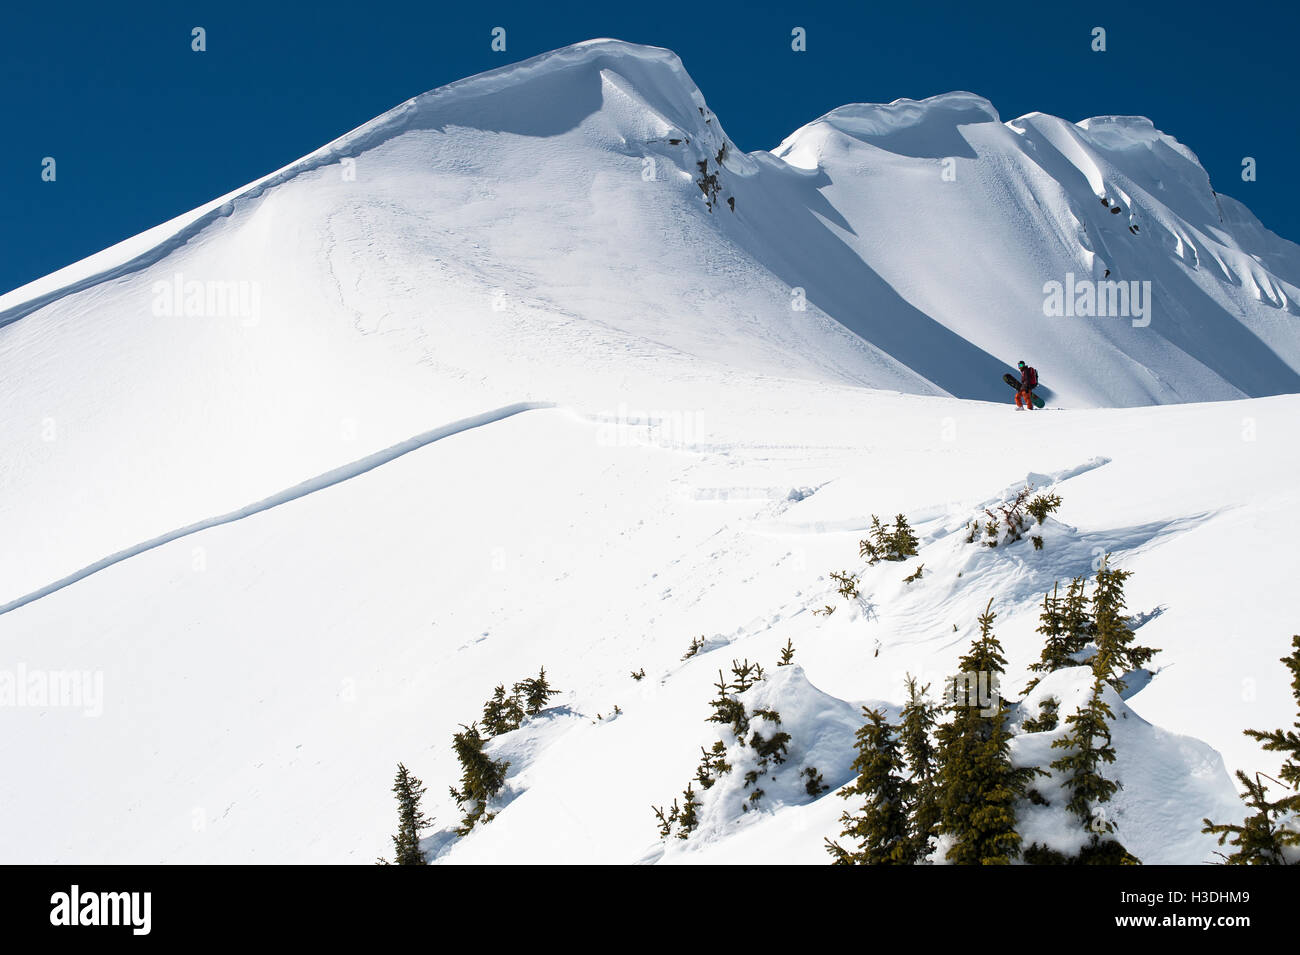 Wandern auf einem Bergrücken in der Nähe einer jüngsten Lawine Folie Snowboarder Stockfoto